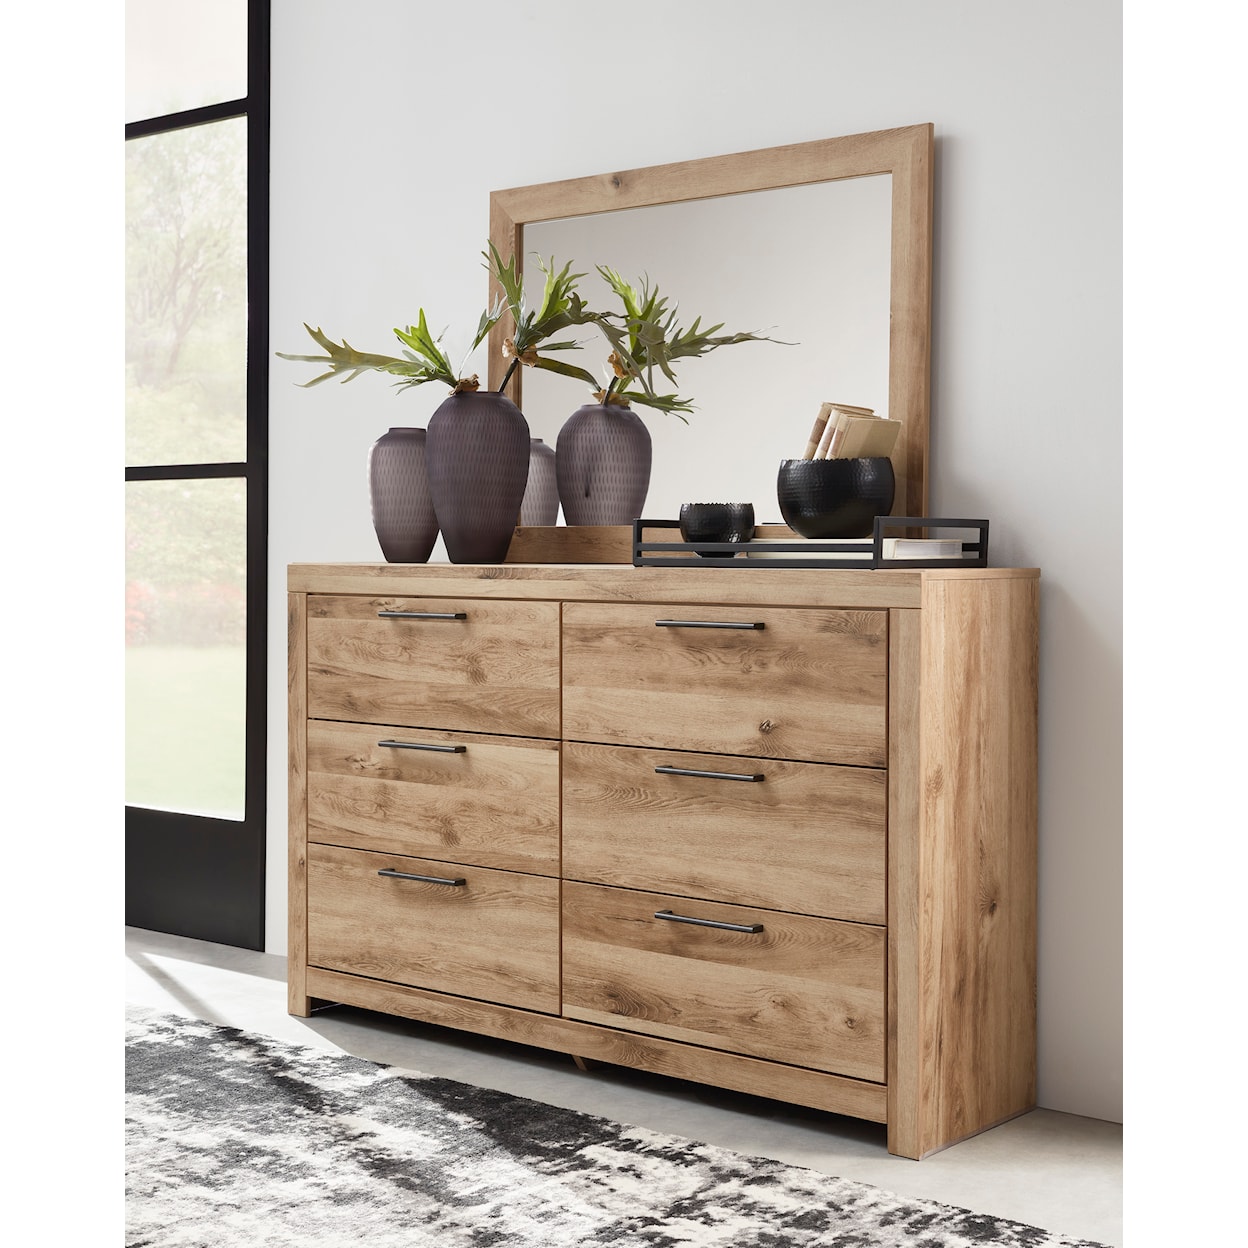 Ashley Furniture Signature Design Hyanna Dresser and Mirror